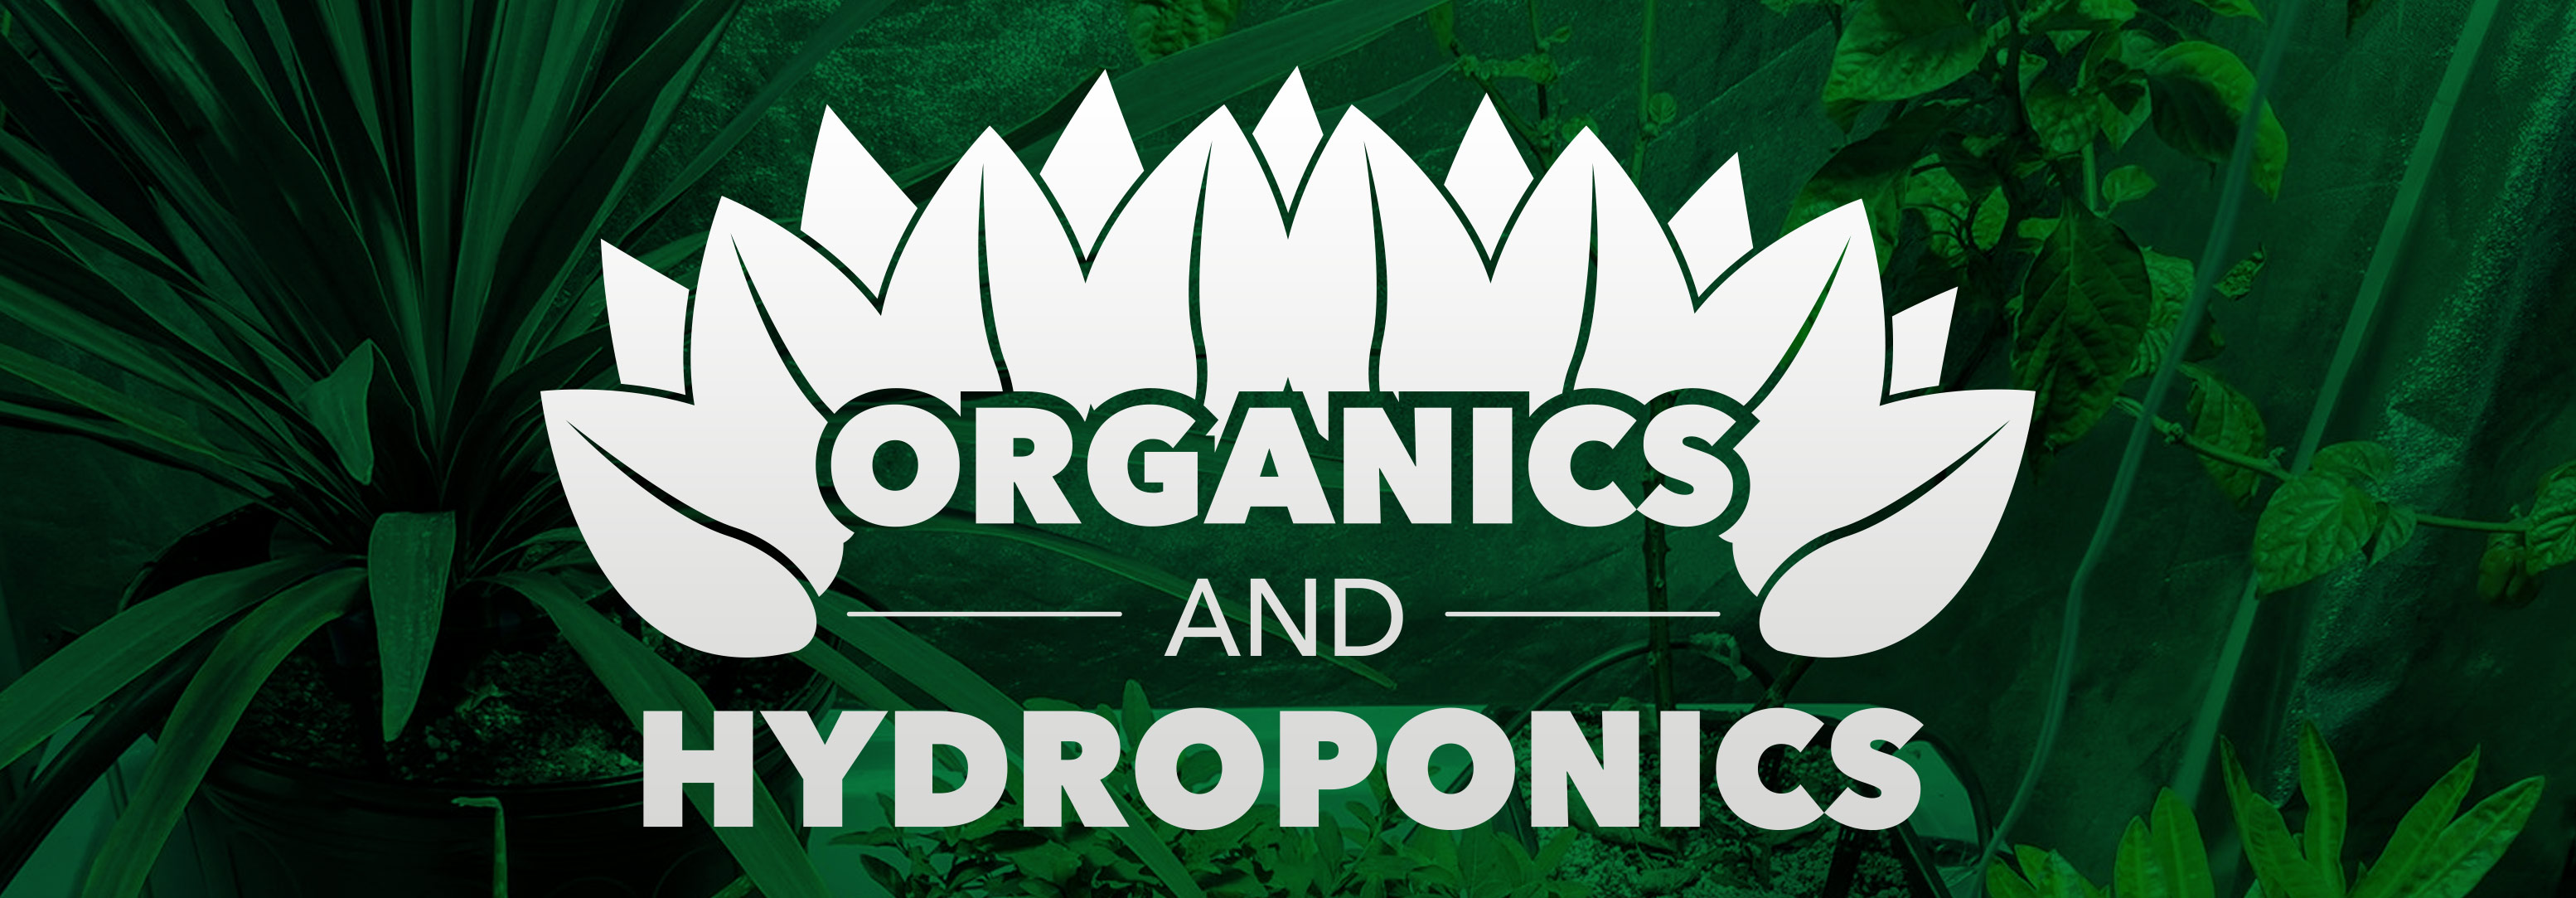 Organics & Hydroponics